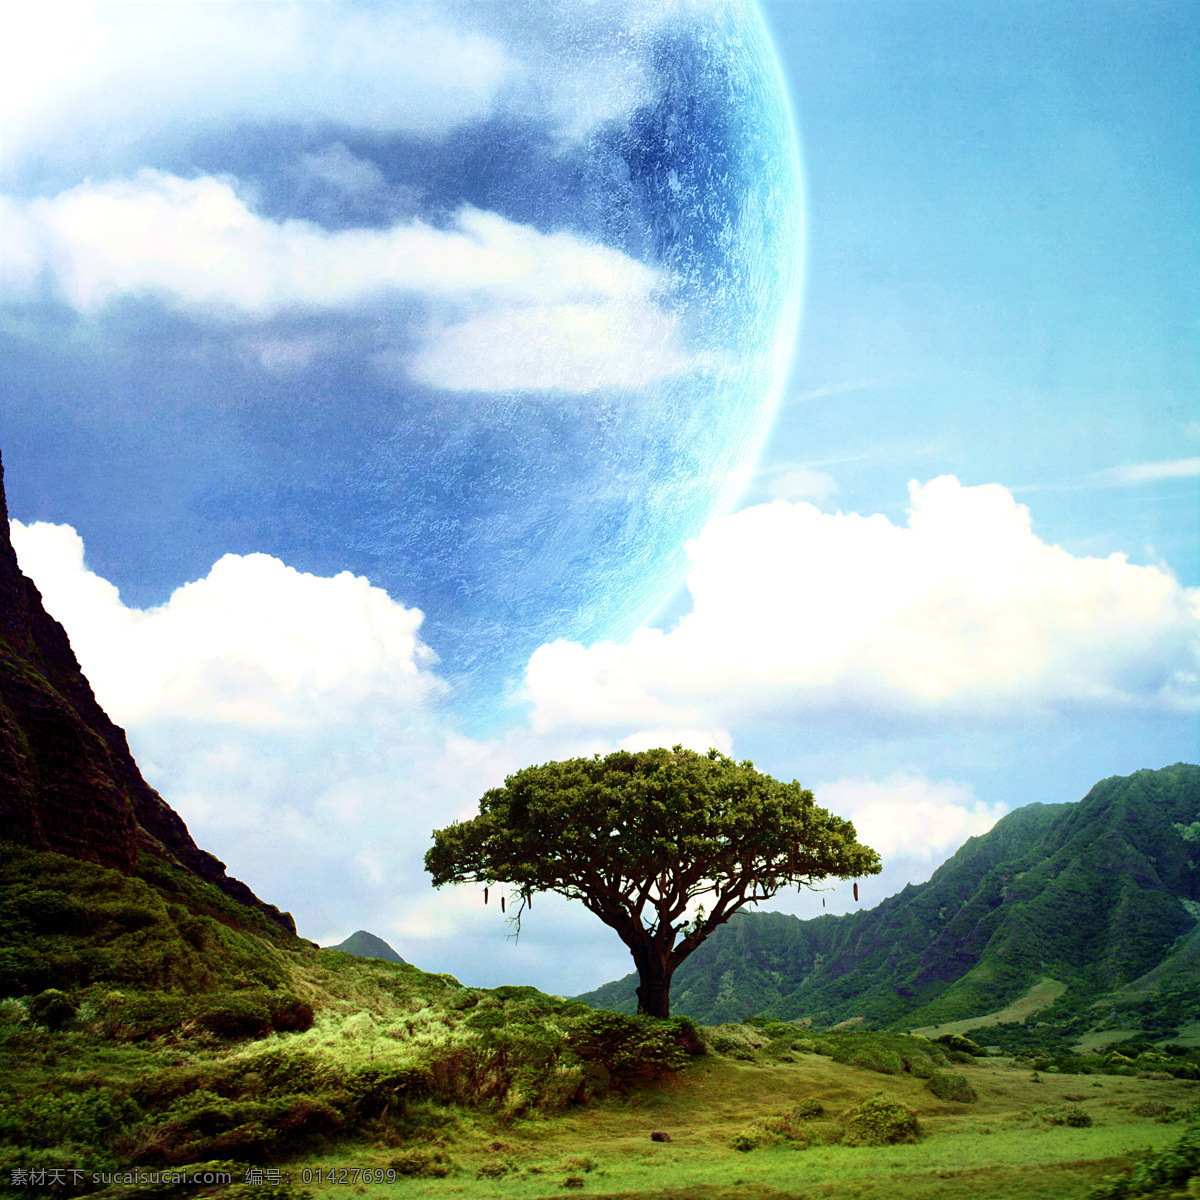 星球 地球 宇宙 云彩 奇幻 魔幻 星空 星际 蓝天 白云 高山 森林 科学研究 现代科技